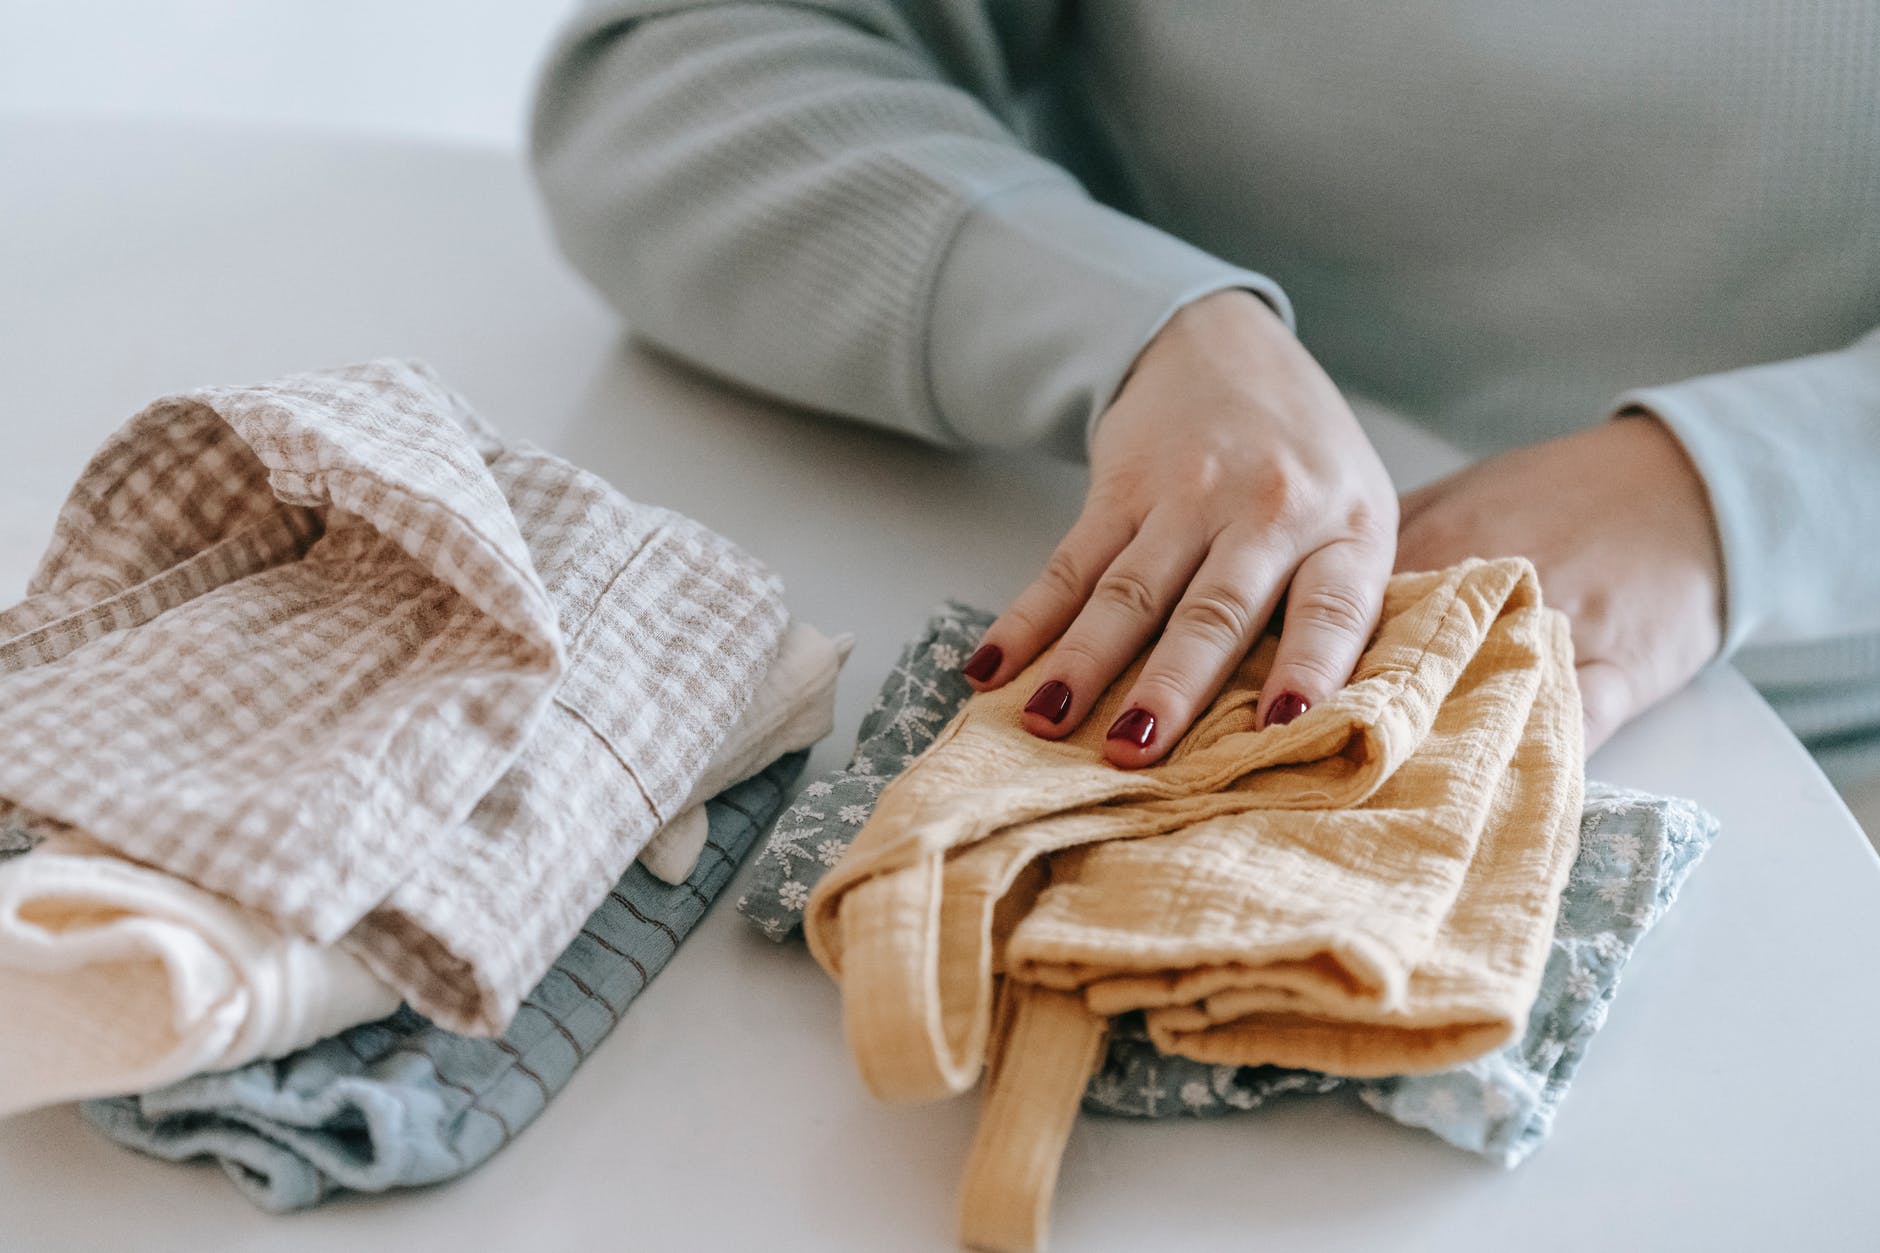 Patricia faltete Wäsche und dachte dabei an ihre schwierige Schwangerschaft. | Quelle: Pexels